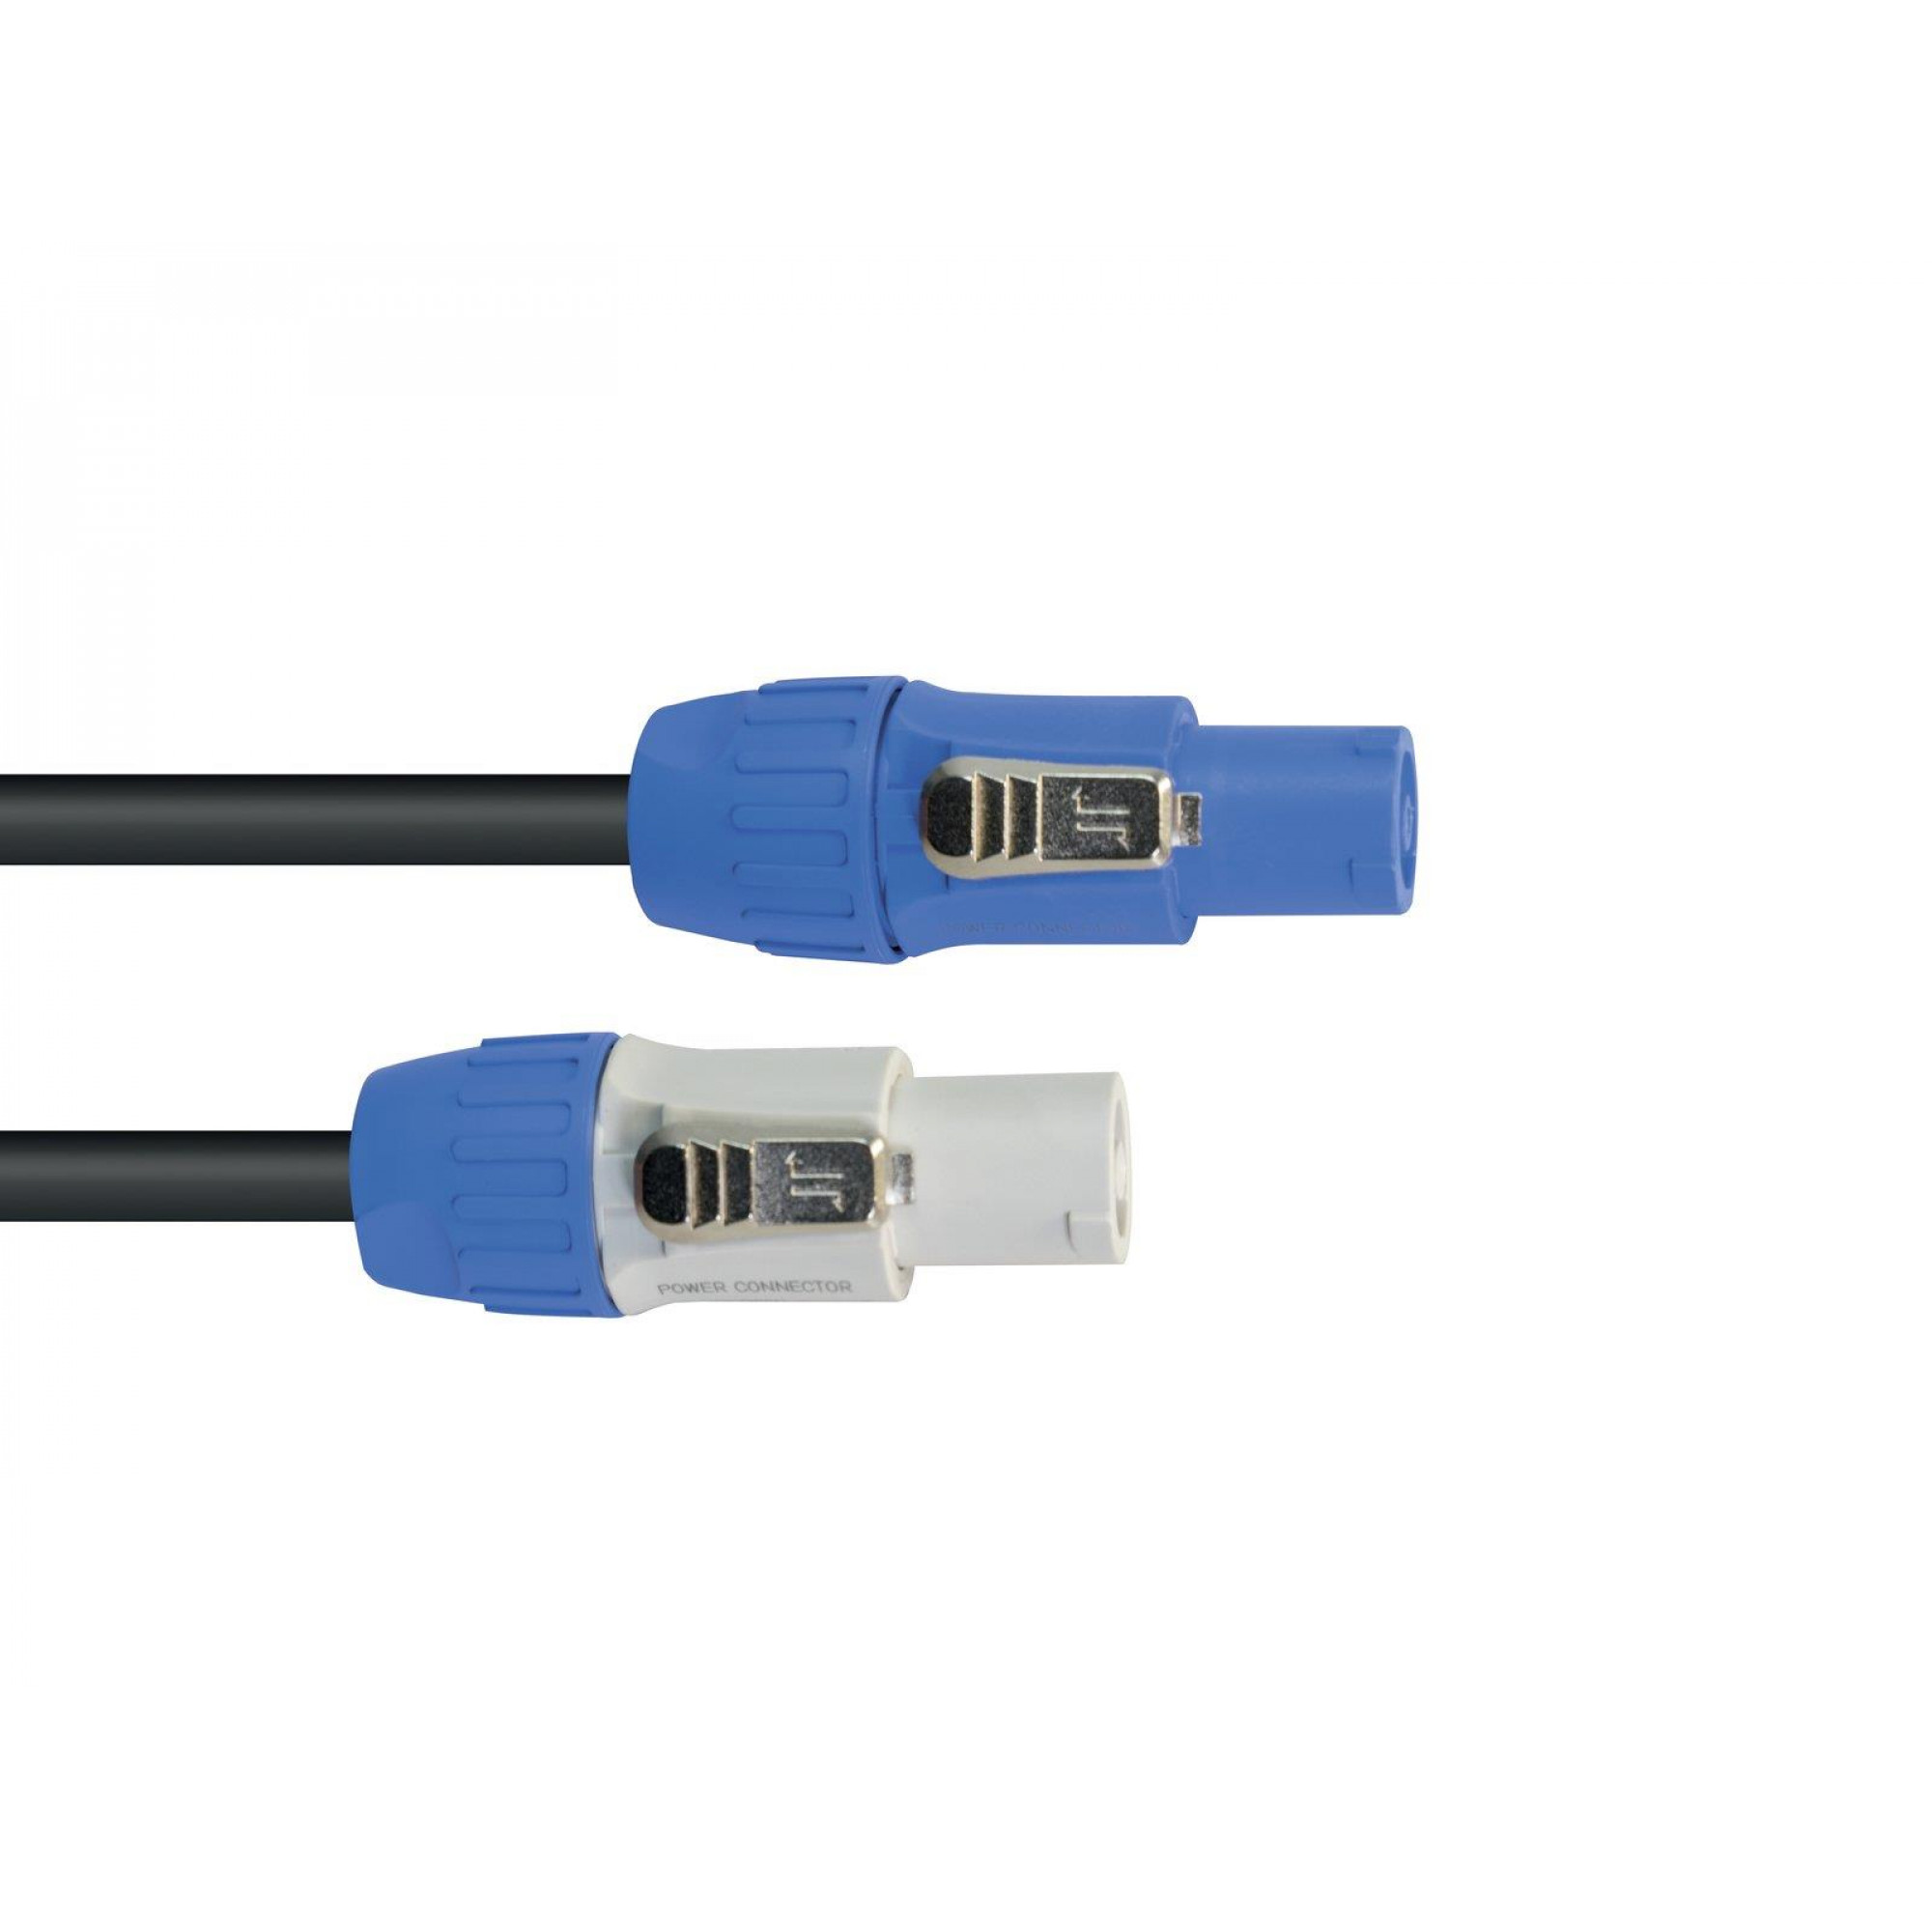 EUROLITE P-Con Connection Cable 3x1.5 3m